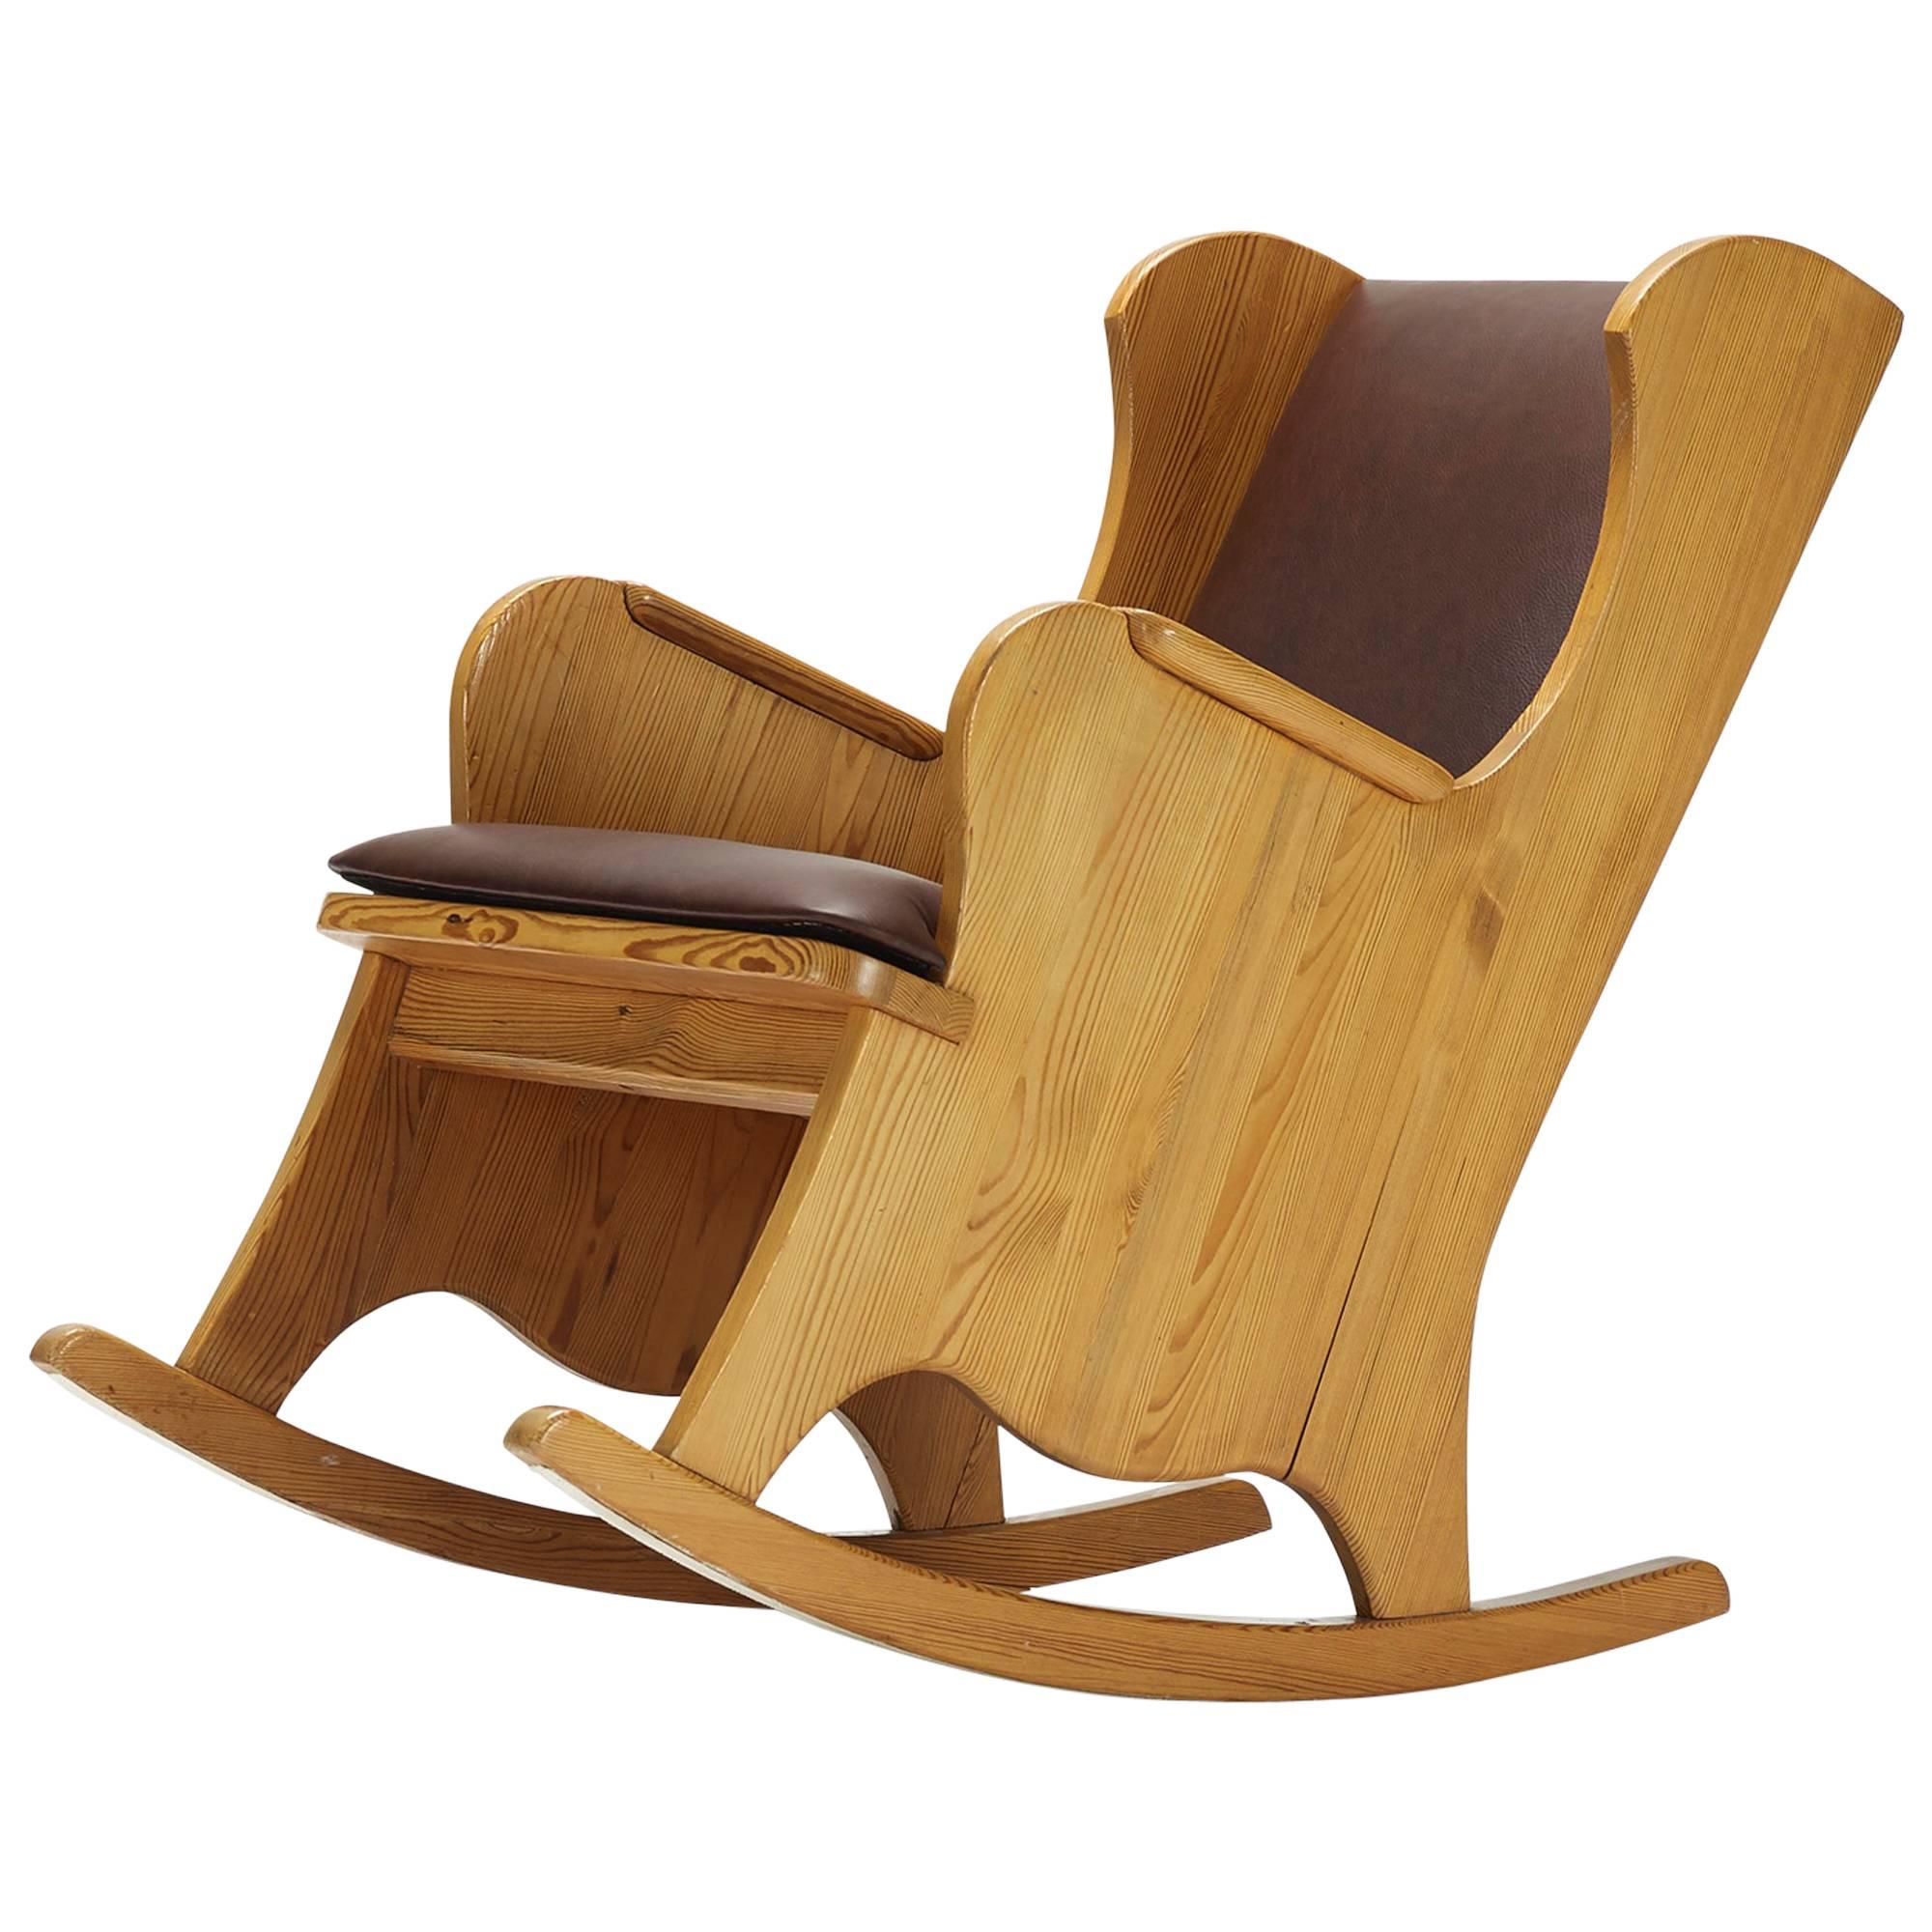 Lovo Rocking Chair by Alex Einar Hjorth for Nordiska Kompaniets Verkstäder  For Sale